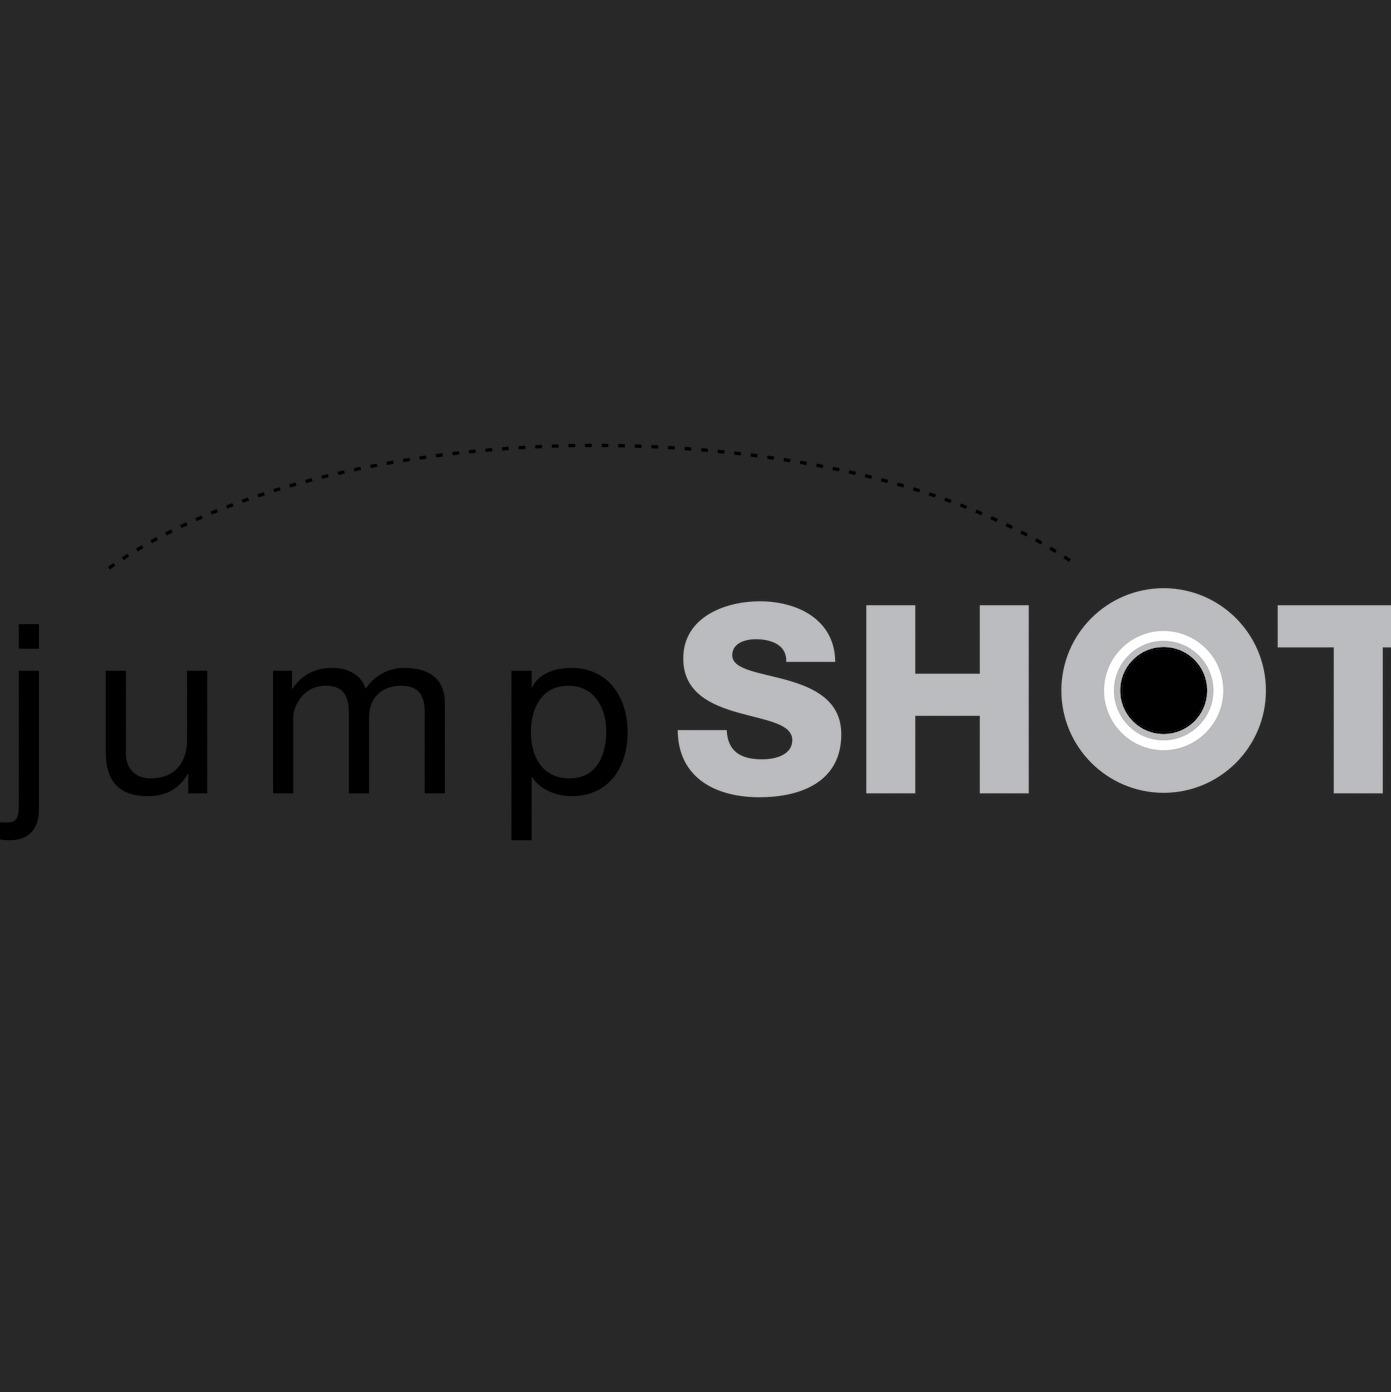 JumpShot